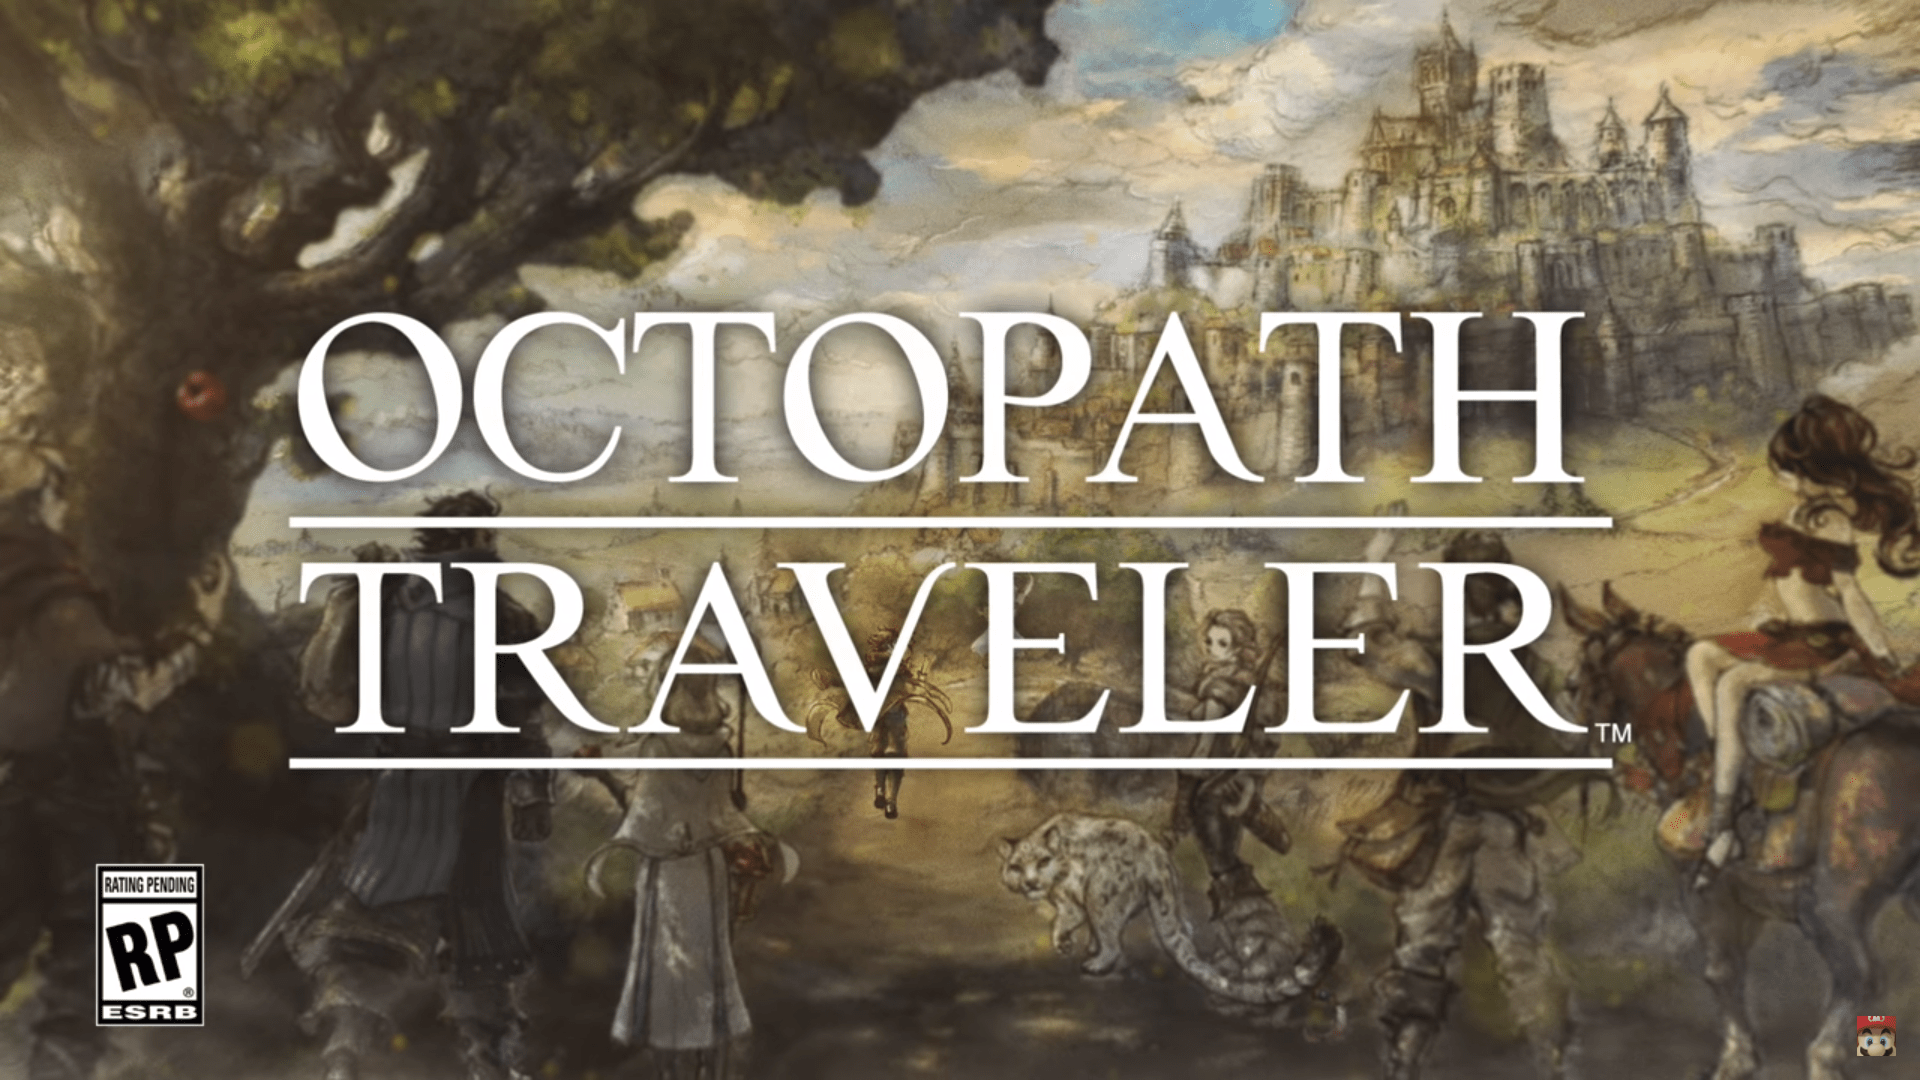 New For Retro Inspired RPG Octopath Traveler Details